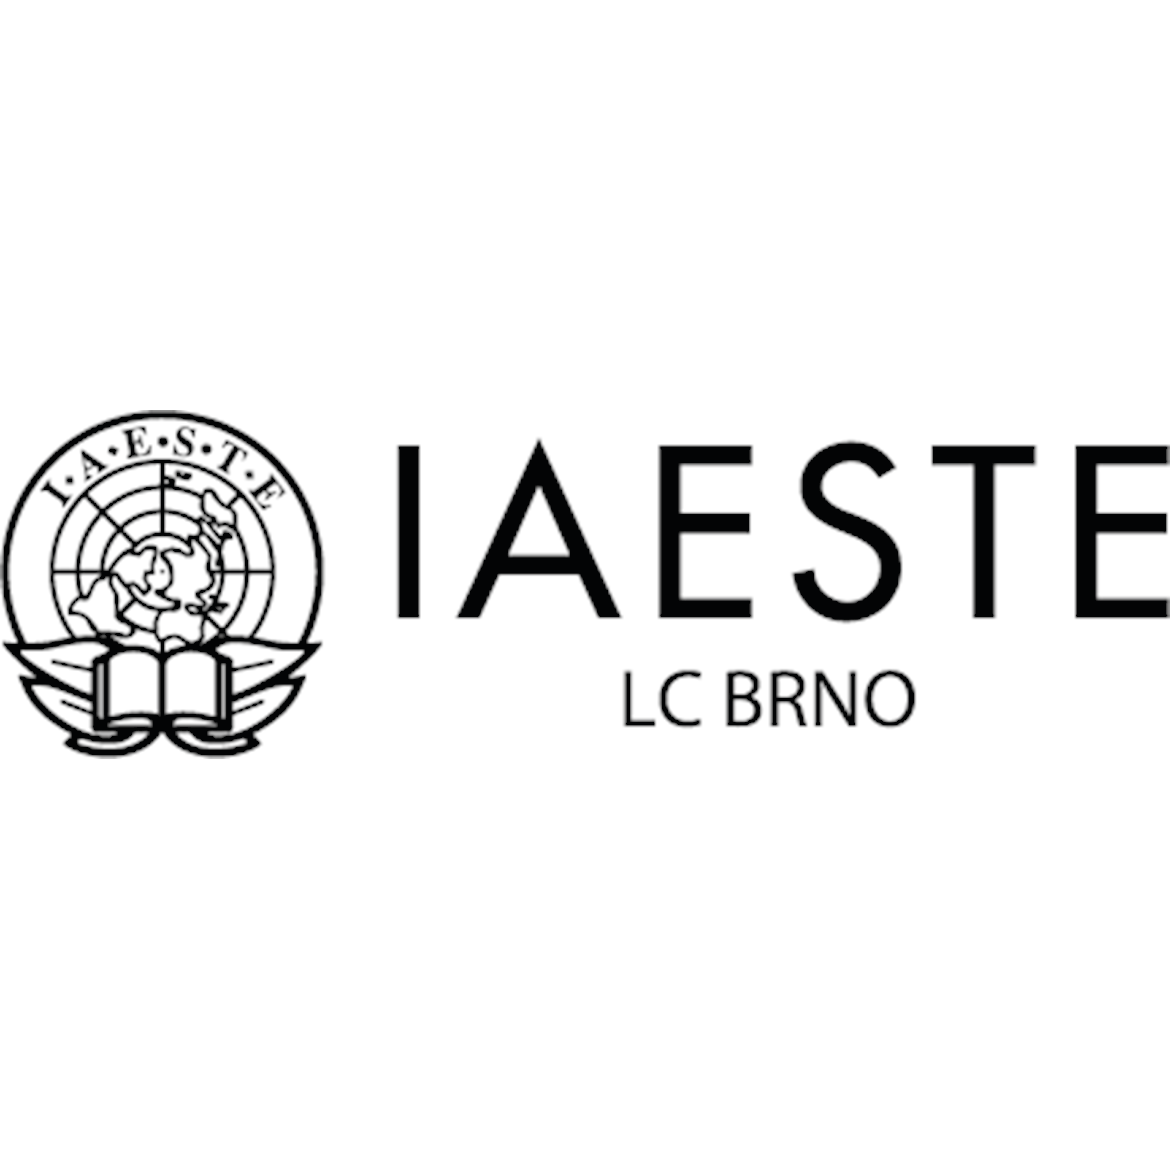 IAESTE LC Brno